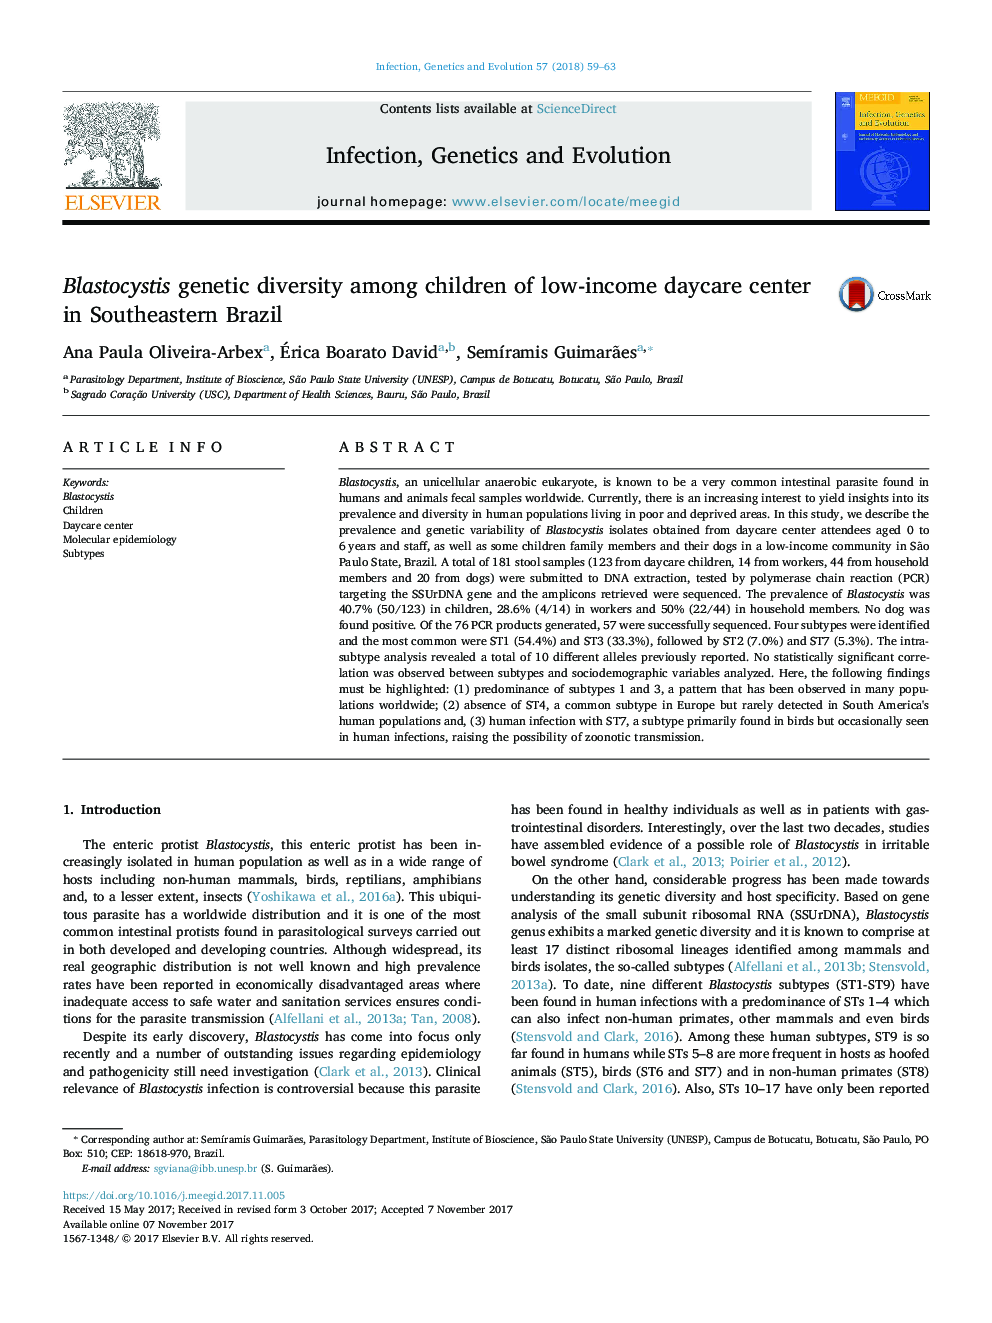 تنوع ژنتیکی بلستوسیتی در میان کودکان کم درآمد مرکز نگهداری روزانه در جنوب شرقی برزیل 